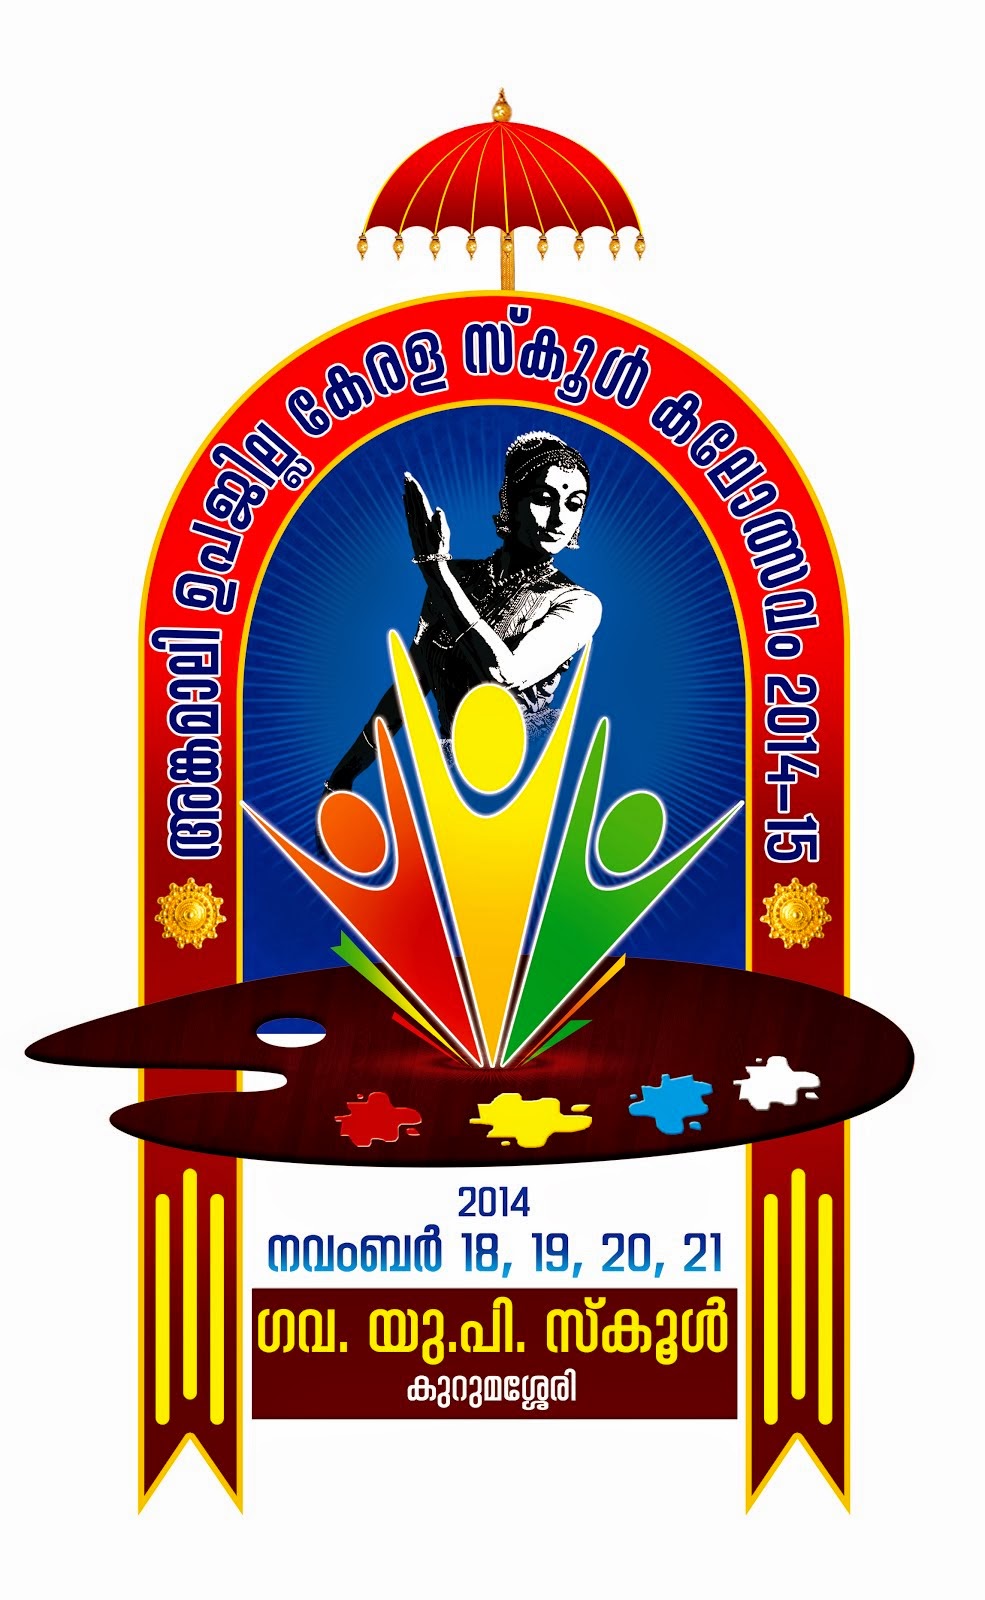 Angamaly Kalolsavam 2014 Logo